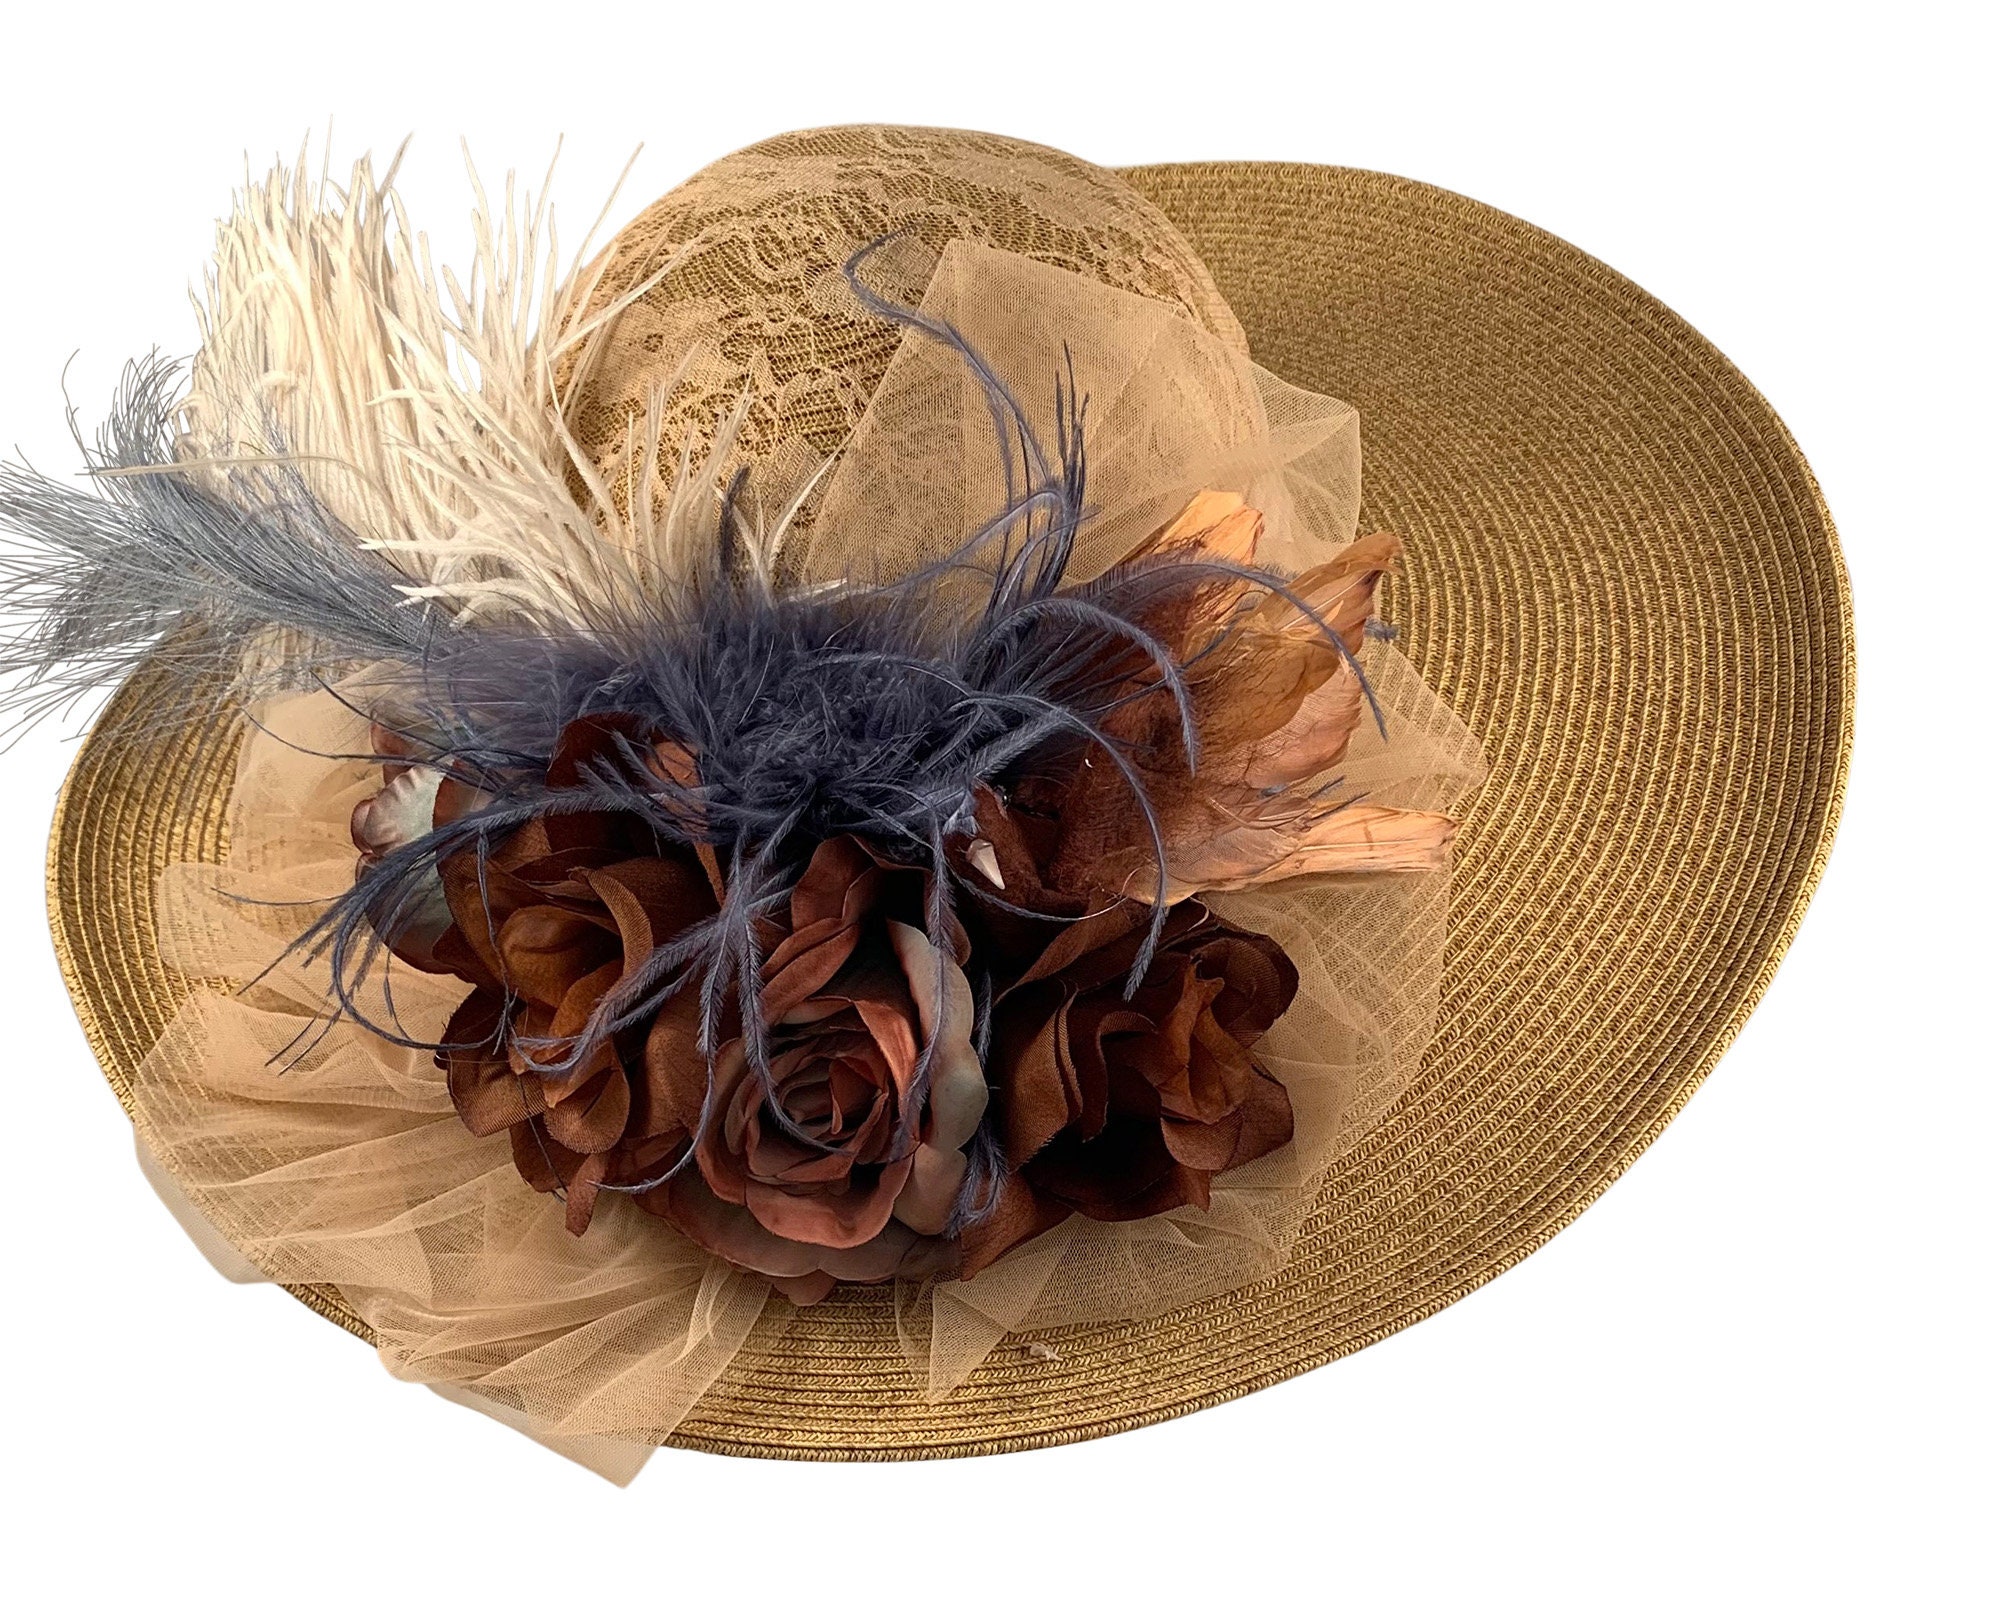 fancy victorian hats